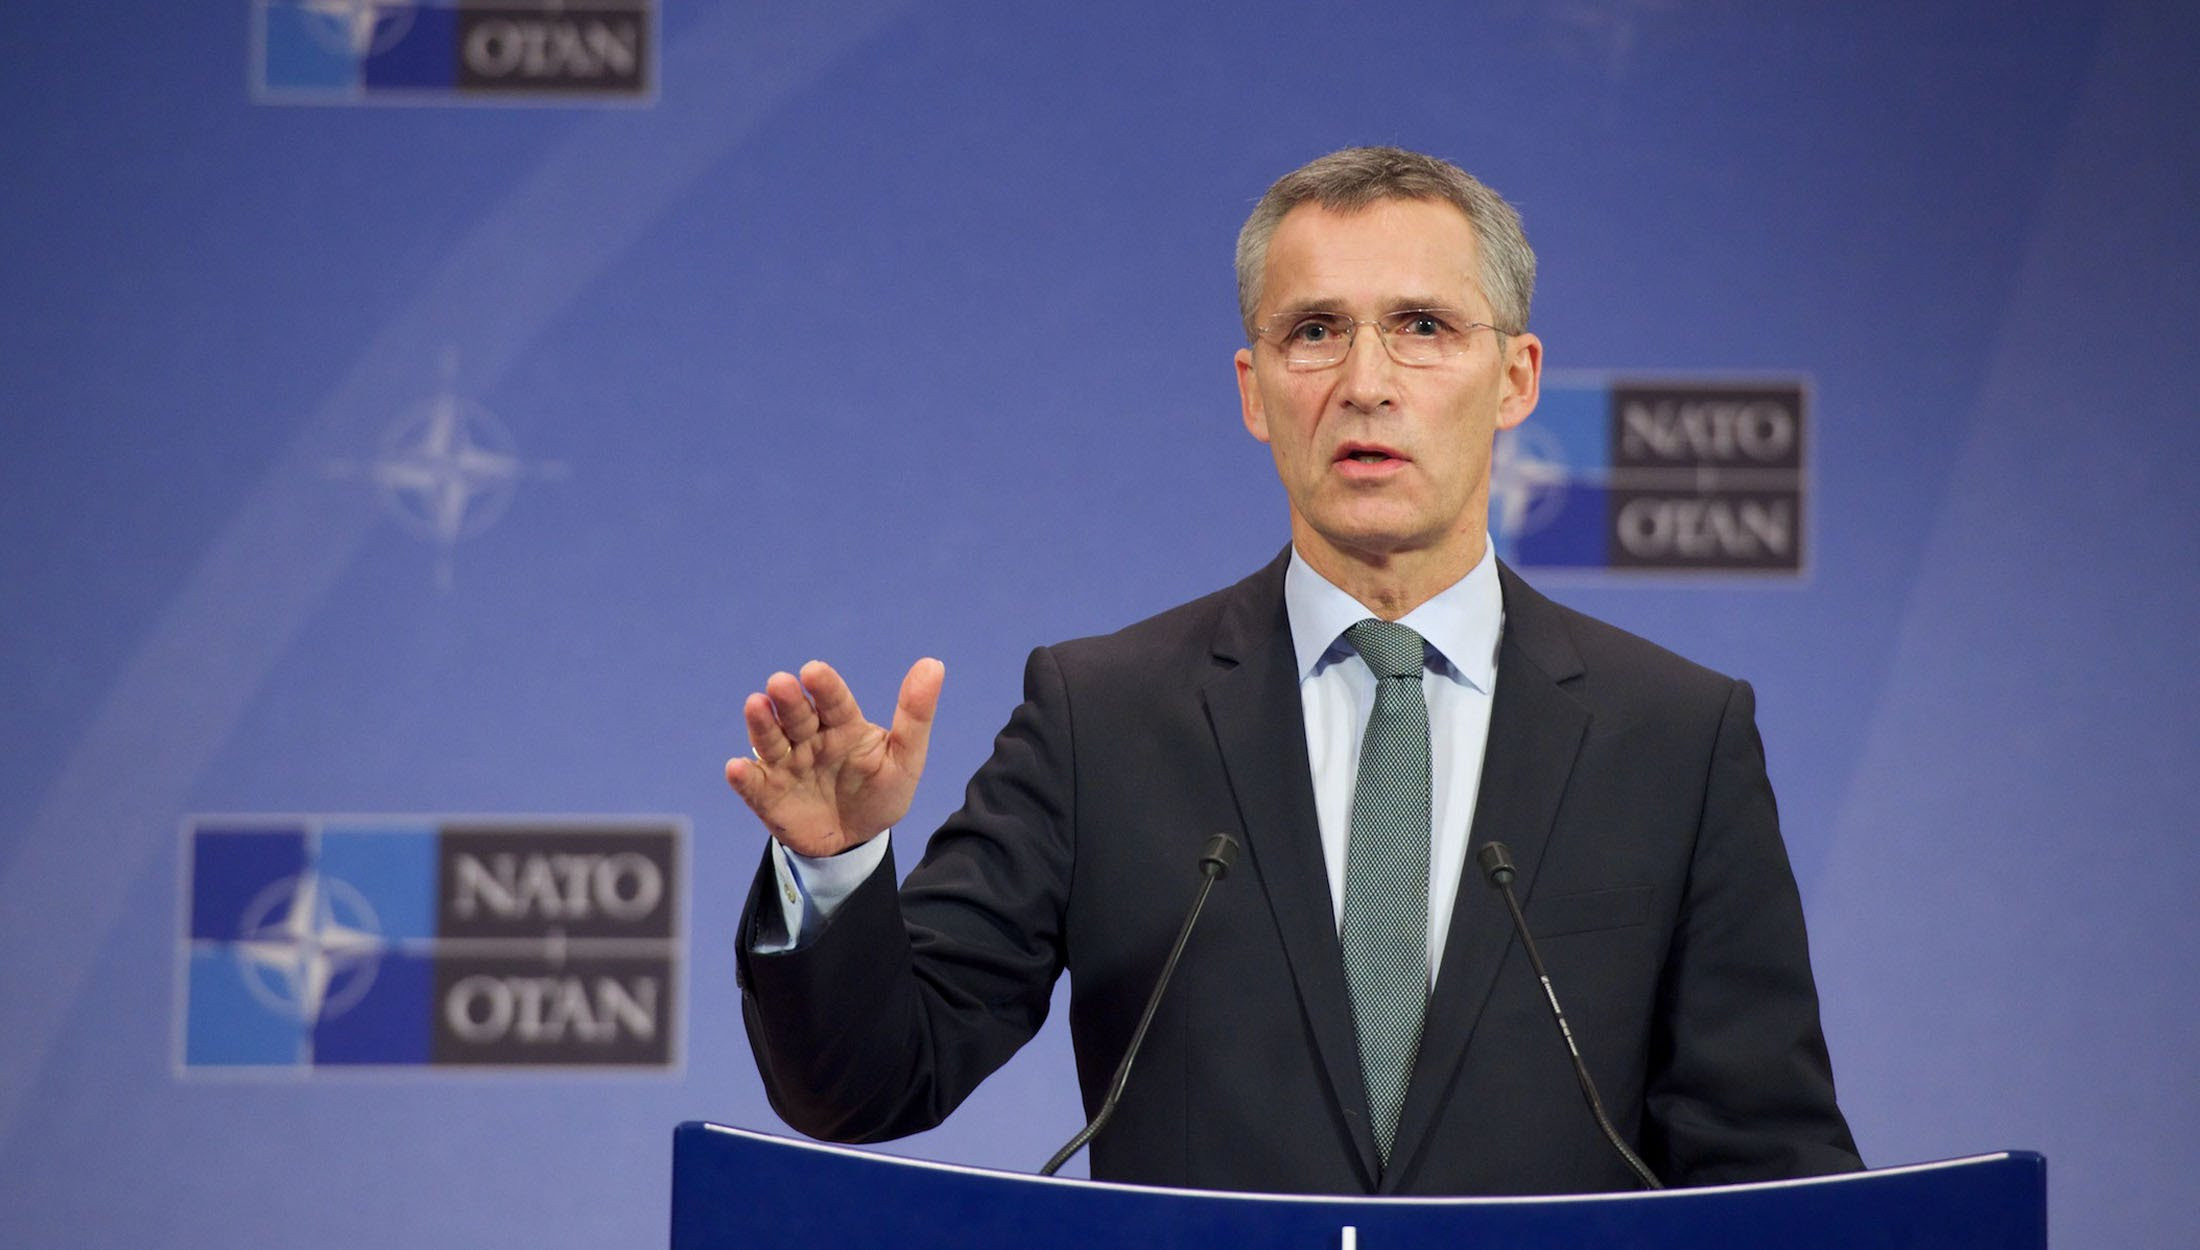 NATO baş katibindən ETİRAF: “Türkiyə əhəmiyyətli bir müttəfiqdir”